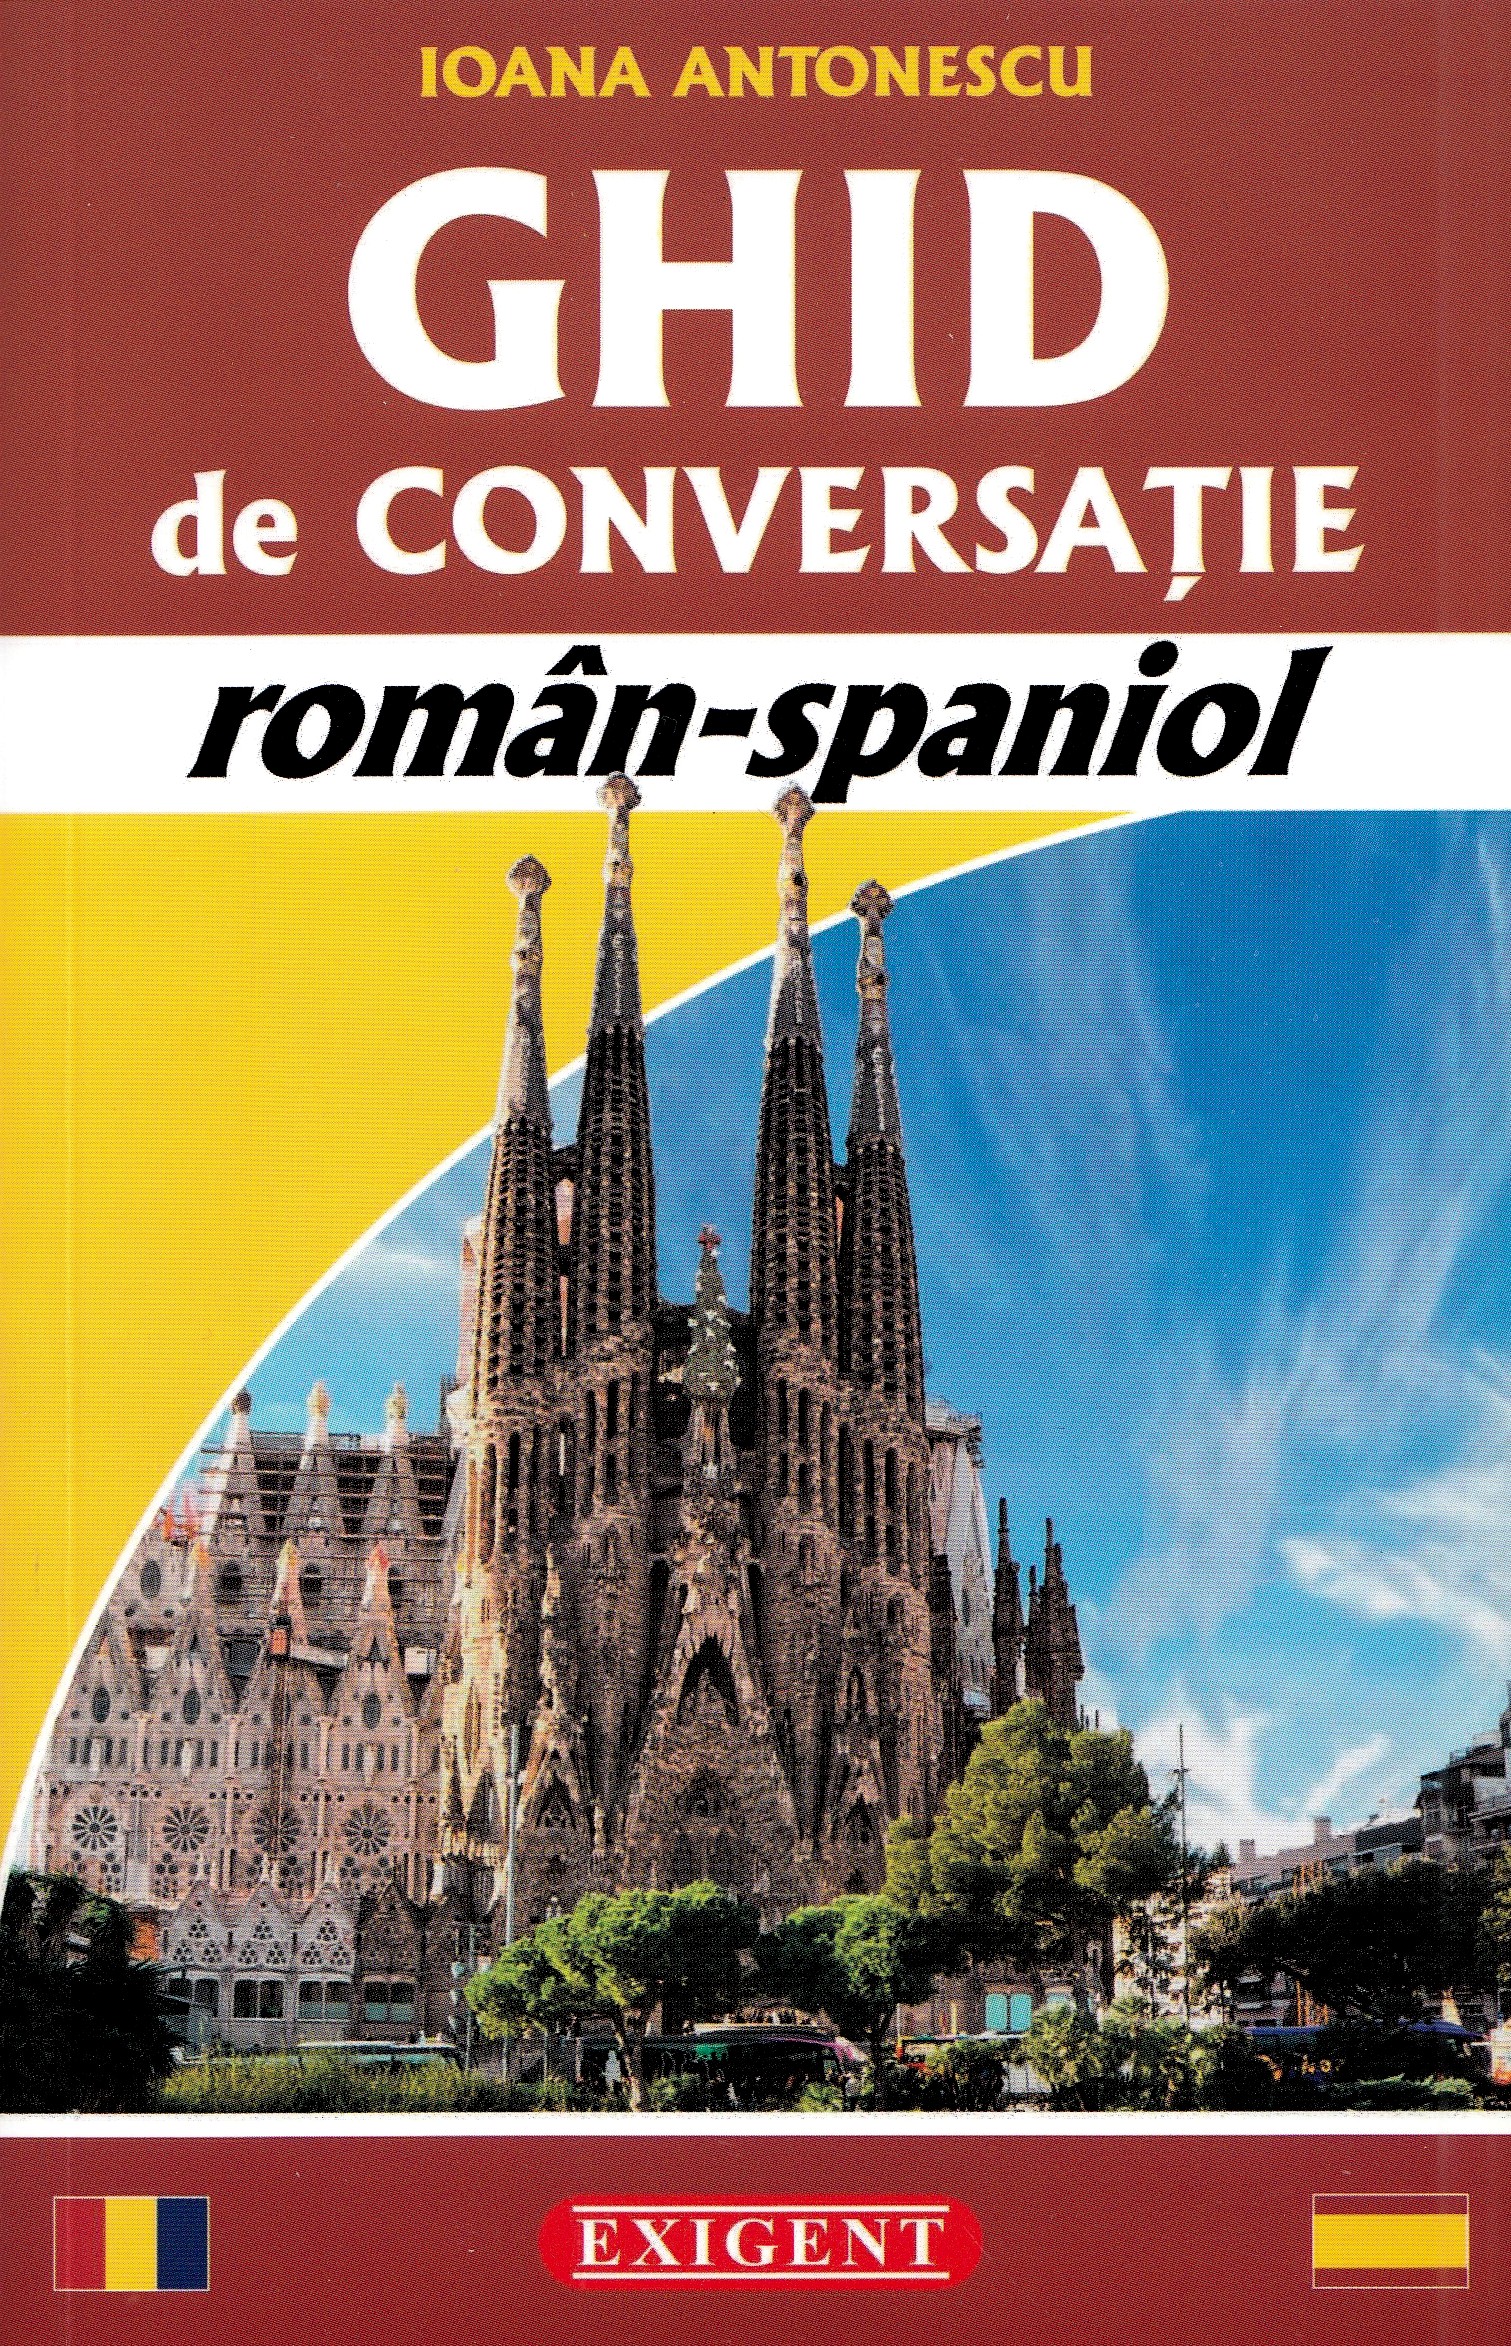 Ghid de conversatie roman-spaniol - Ioana Antonescu